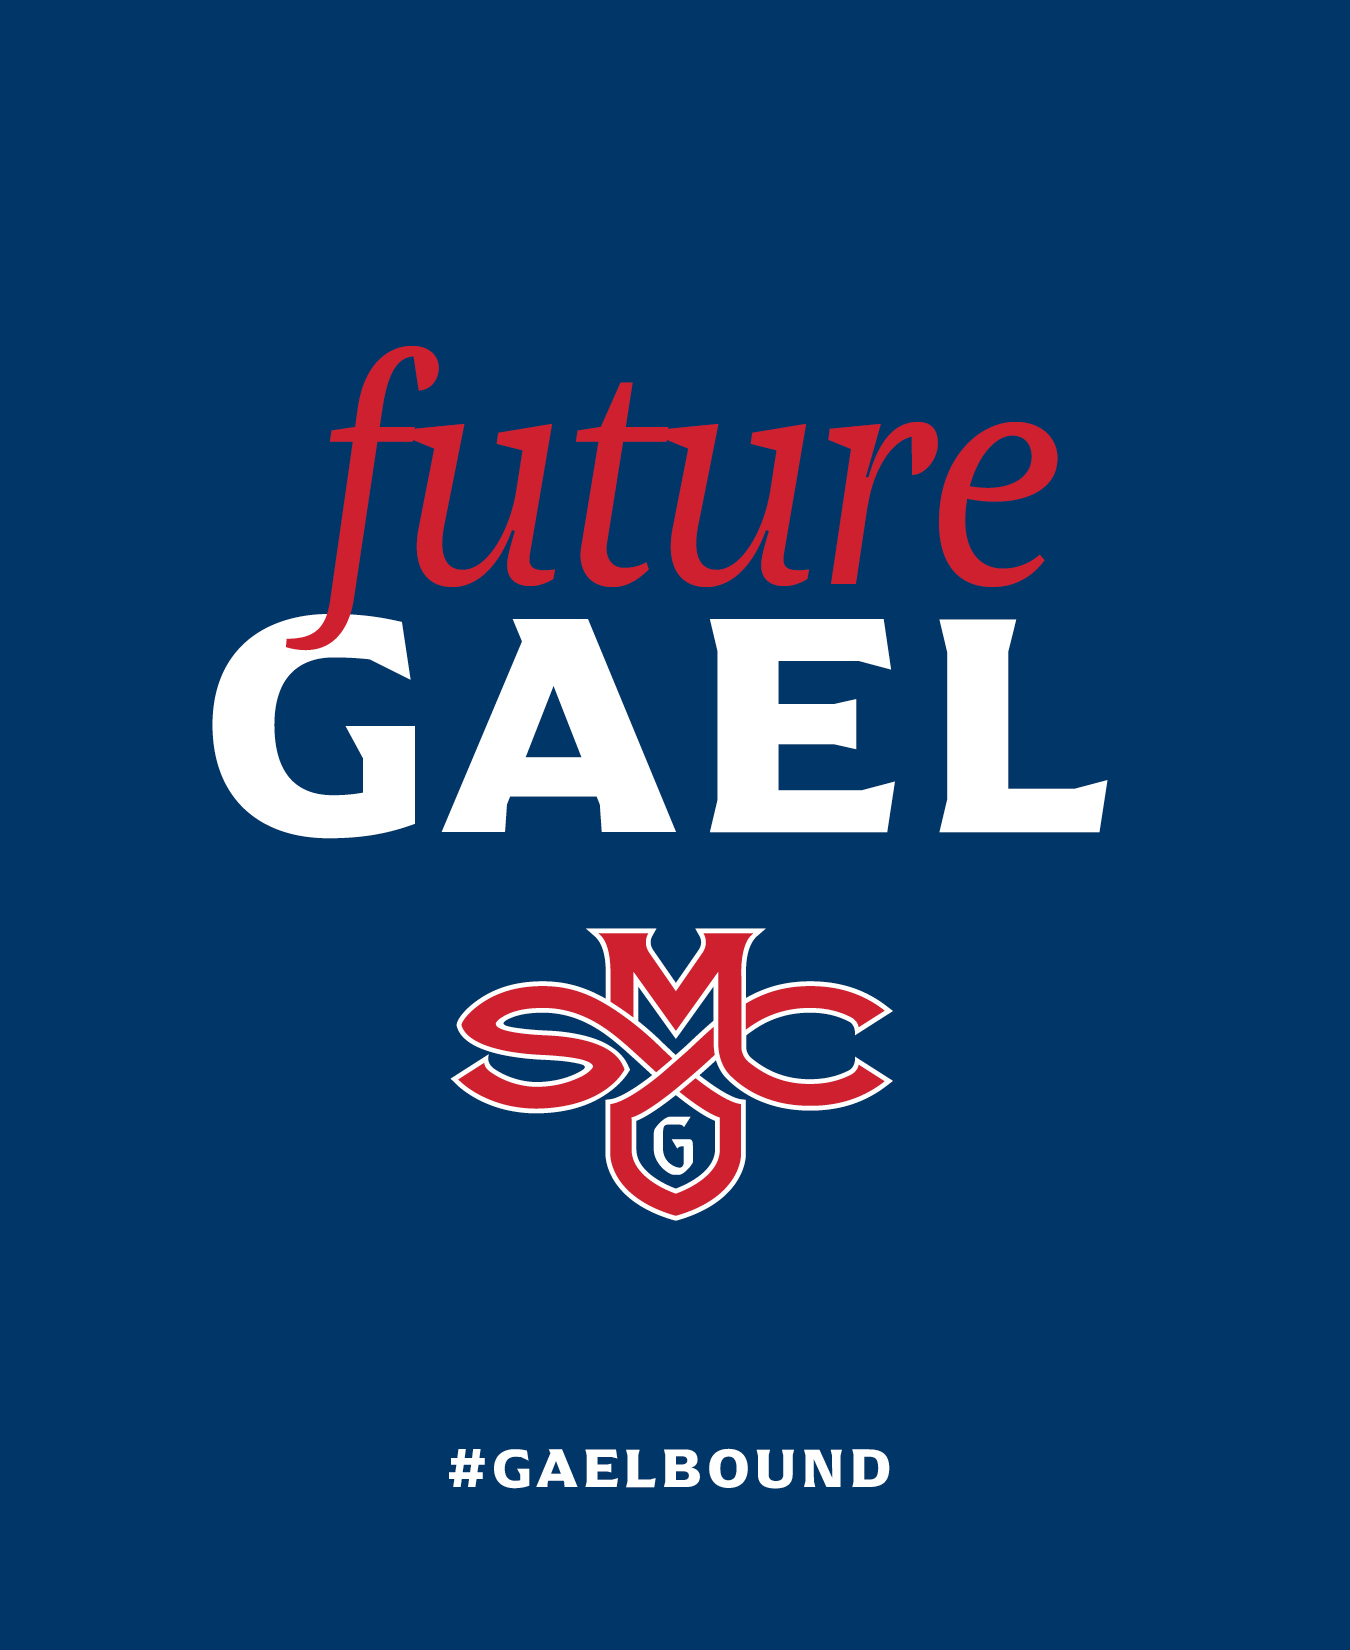 future gael hashtag gaelbound